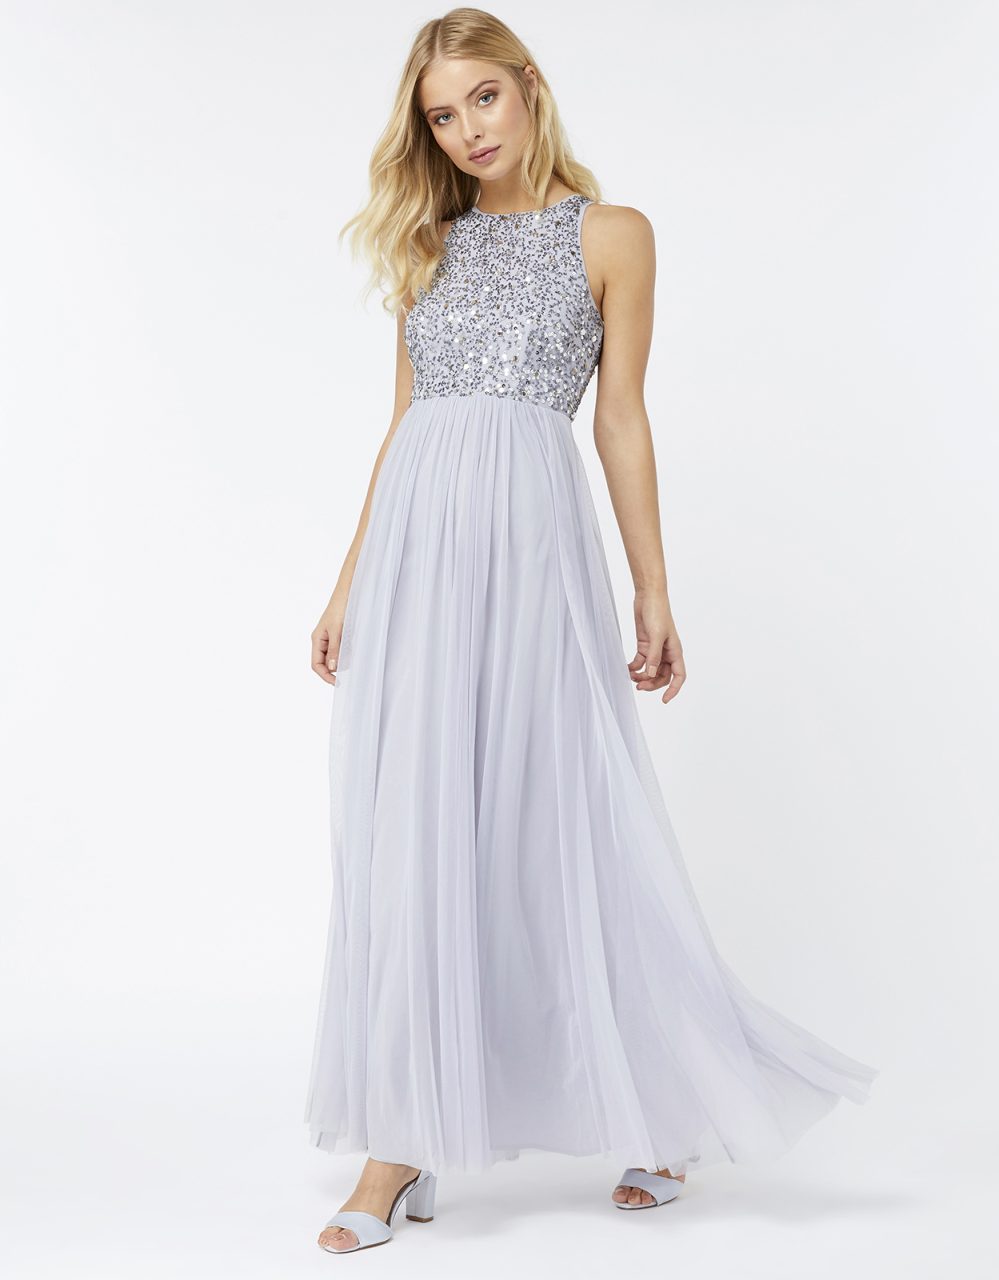 Summer Sparkle: 11 Embellished Bridesmaid Dresses | weddingsonline